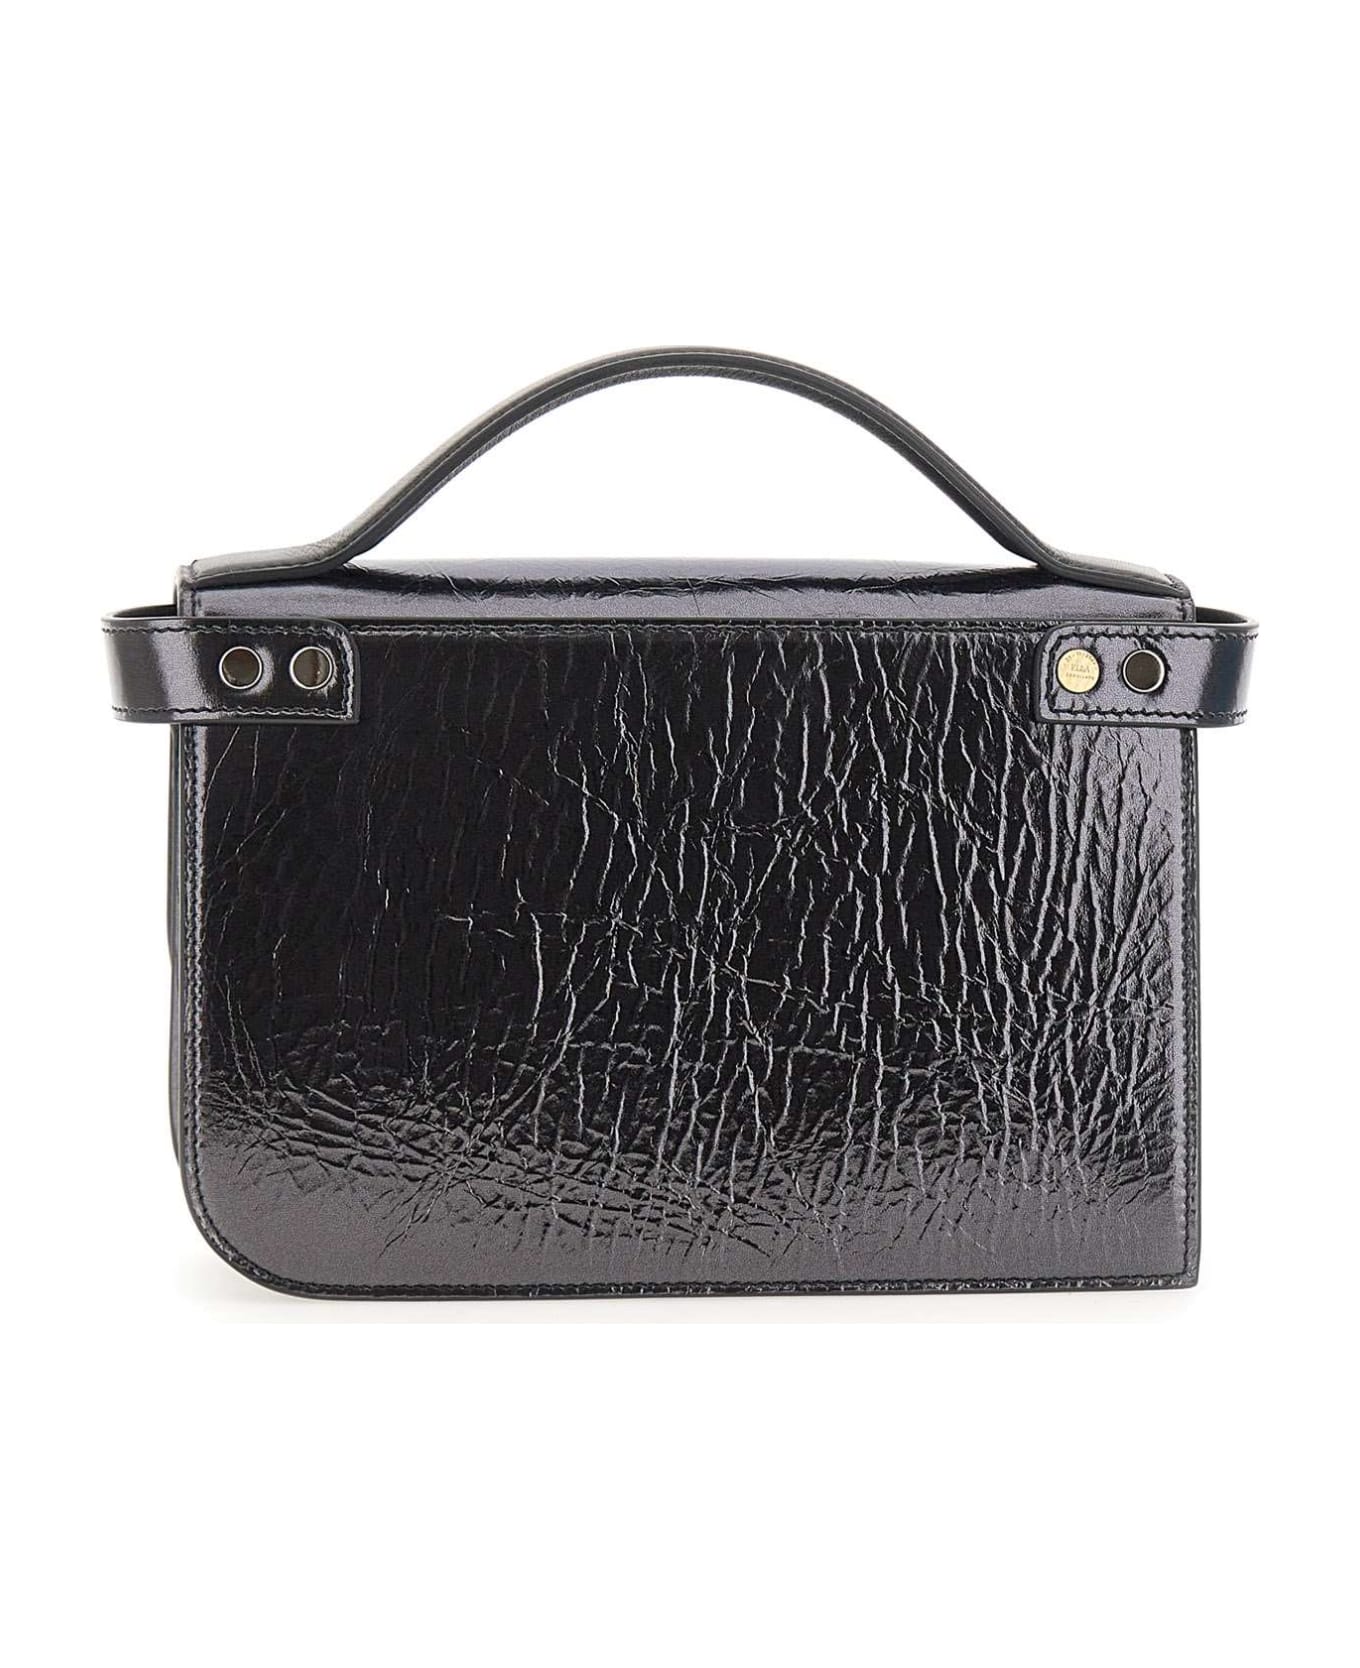 Zanellato 'ella Lume' Leather Handbag - Nero